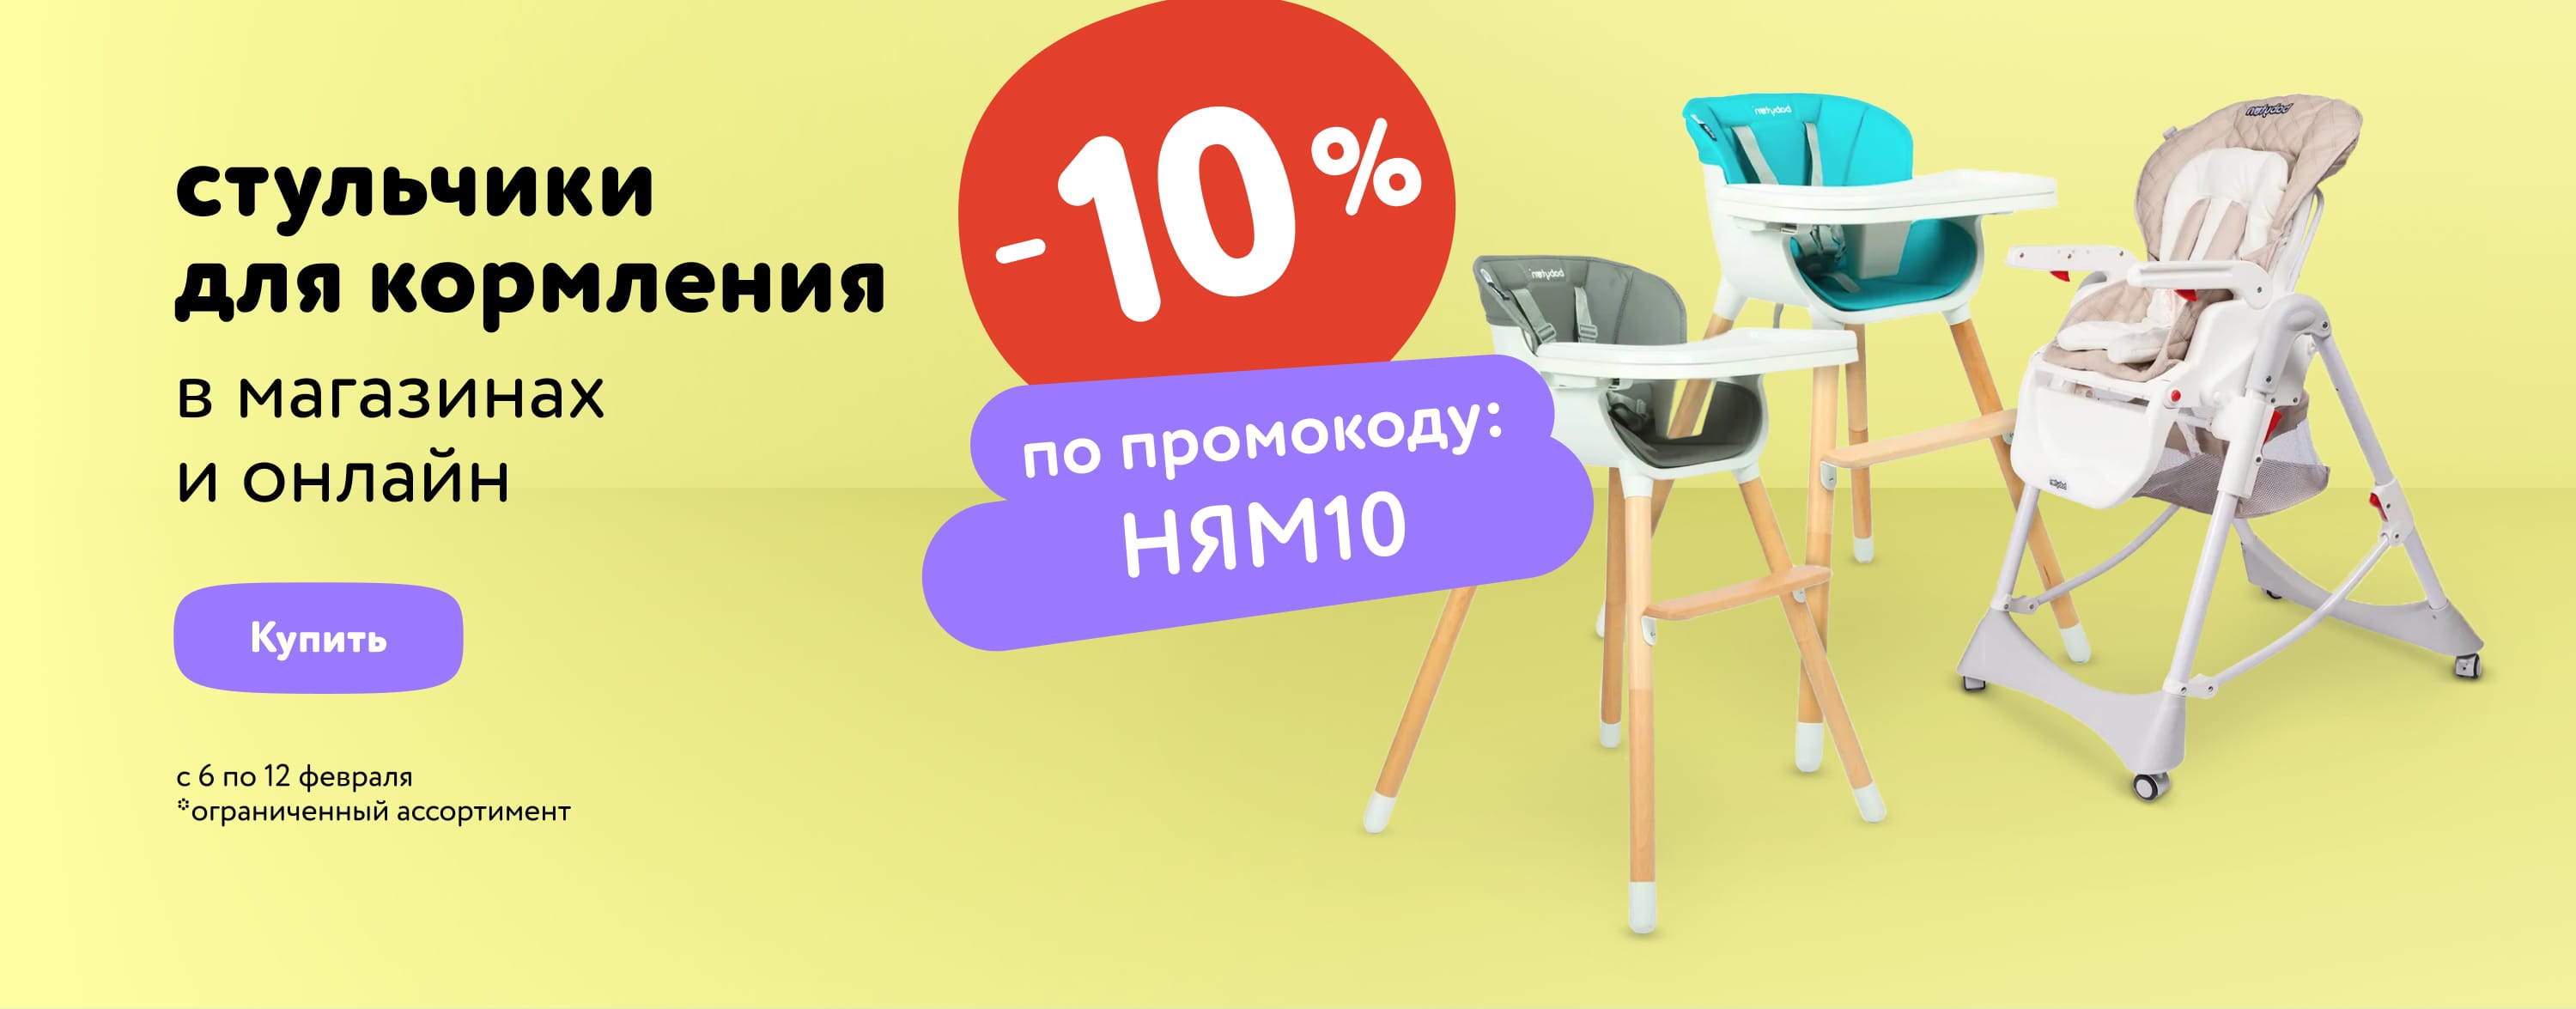 Доп. скидка 10 % на стульчики для кормления по промокоду статика+категория